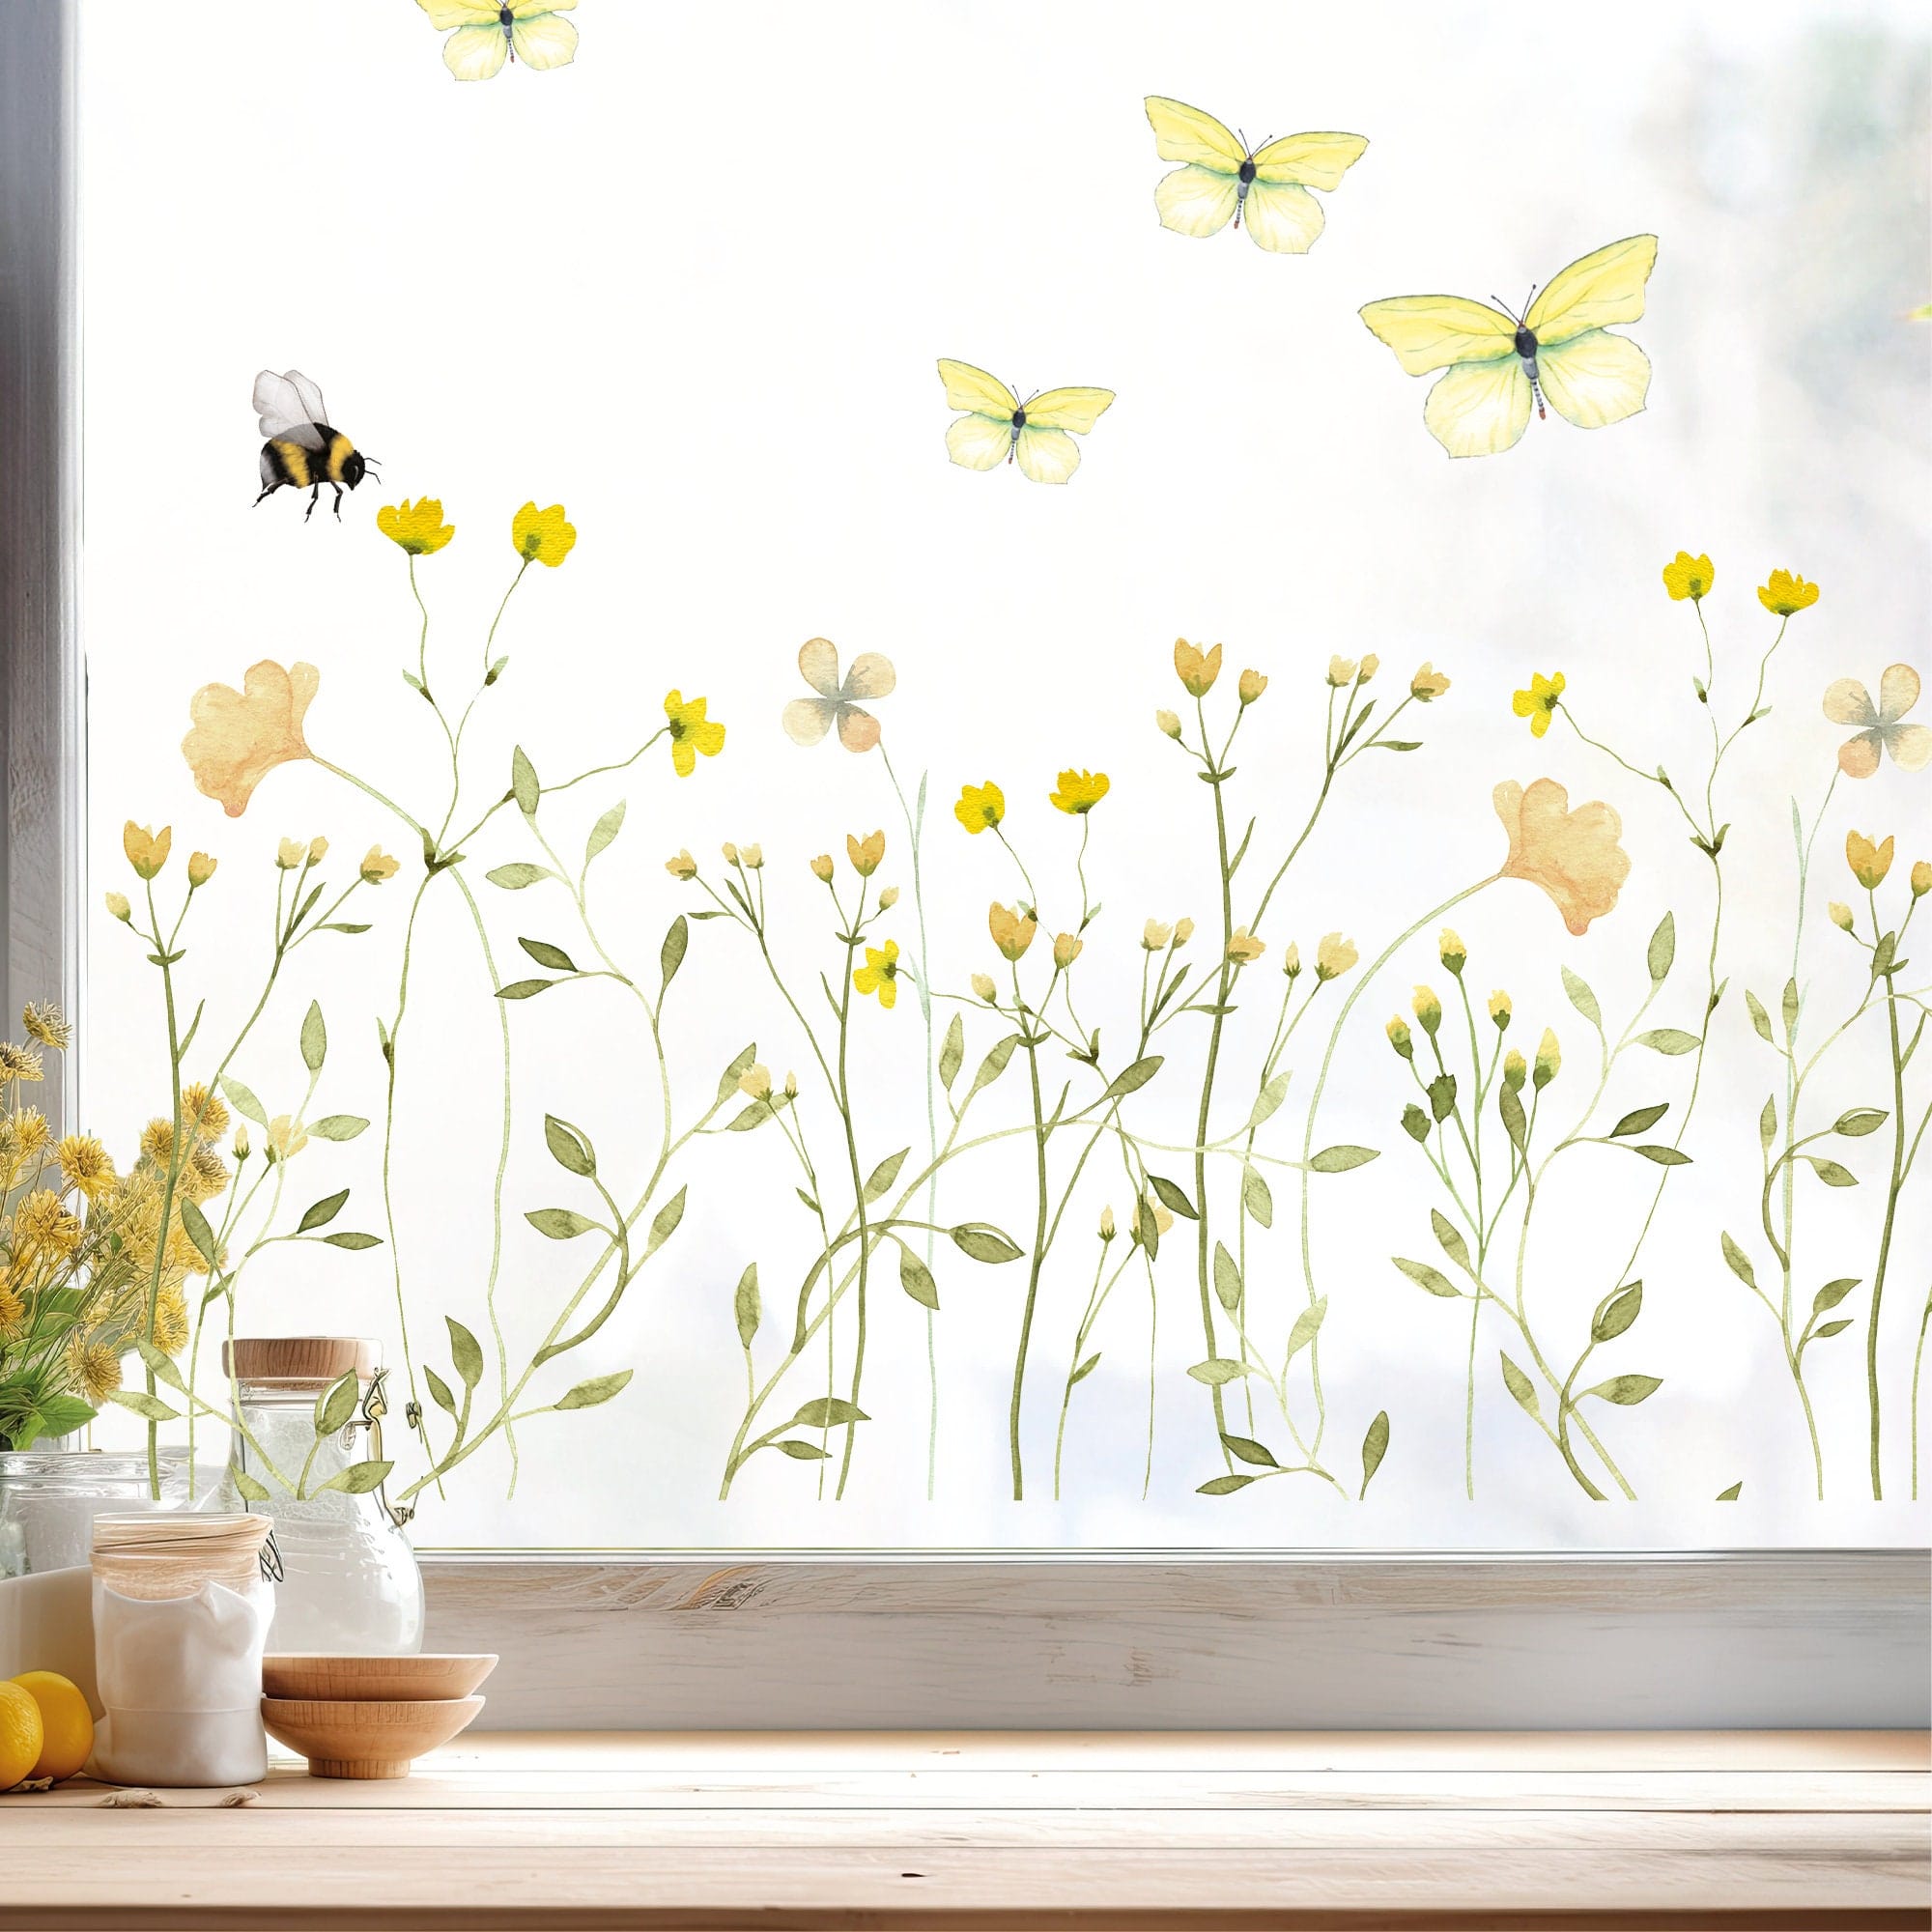 Fensterbild gelbe Wildblumenwiese Frühling Wildgras Gräser Blumenwiese mit Hummeln Schmetterlingen Fensterdekoration